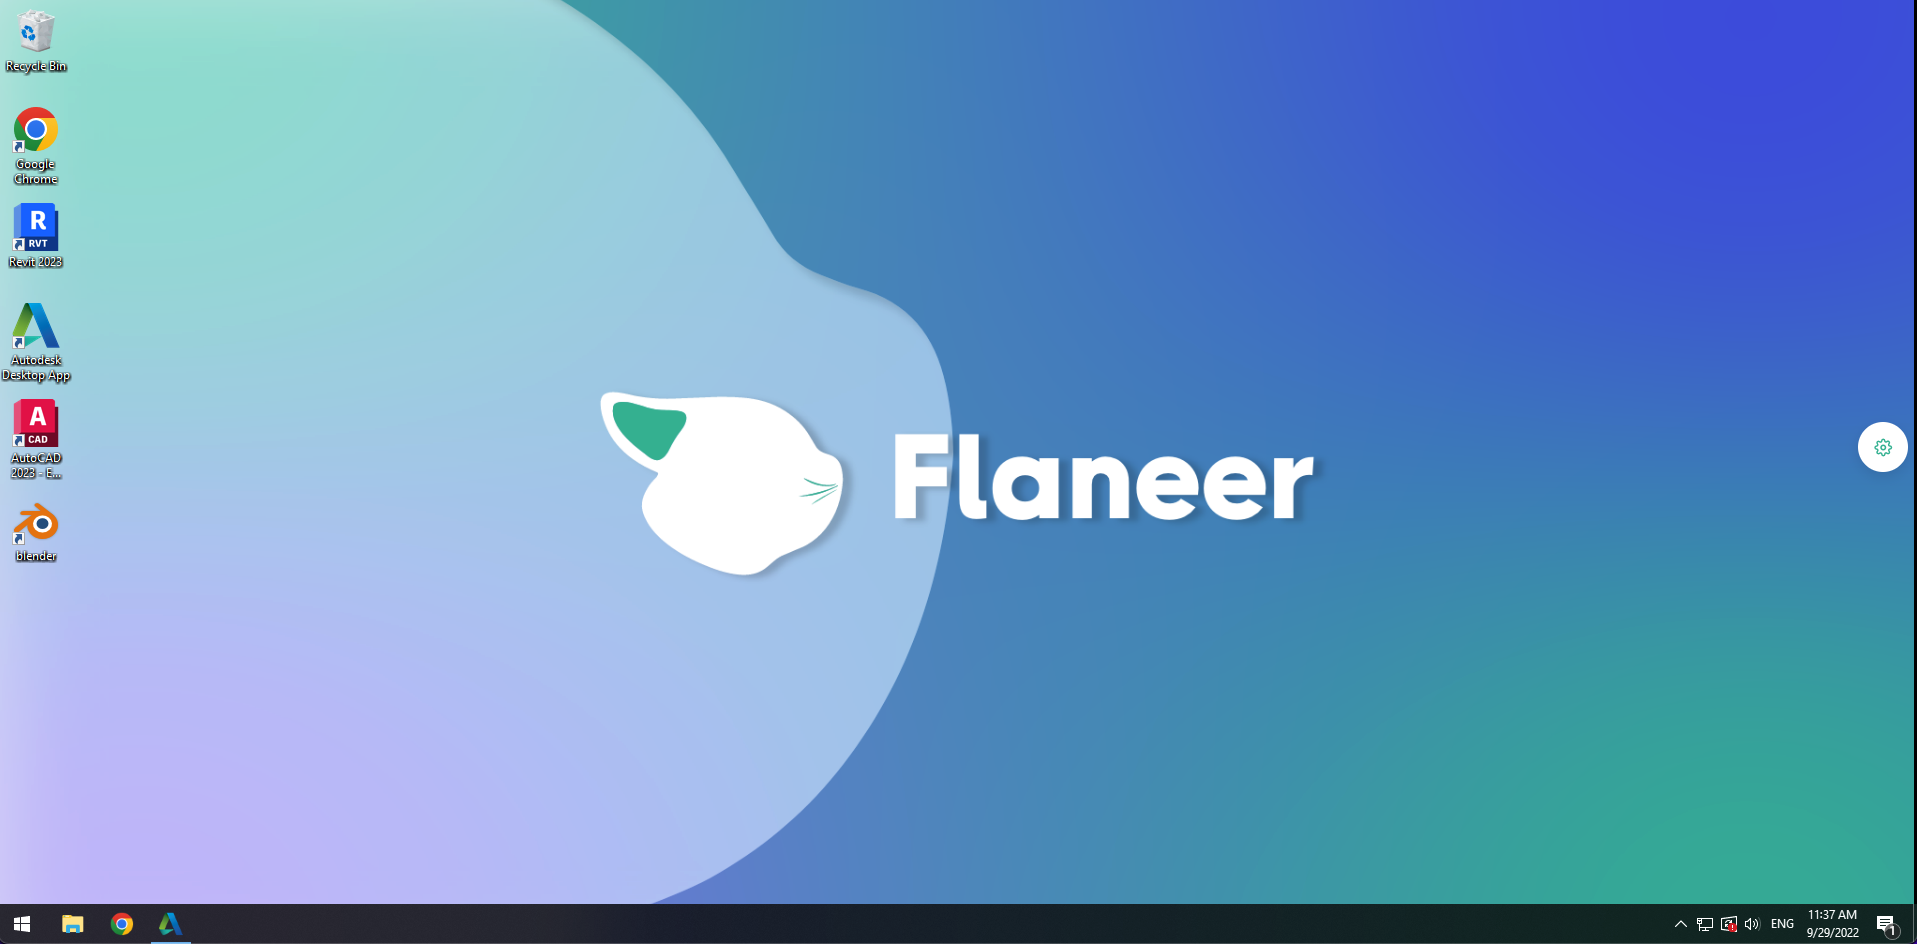 Flaneer c2909f24-abdd-4803-9453-af156e99342c.png